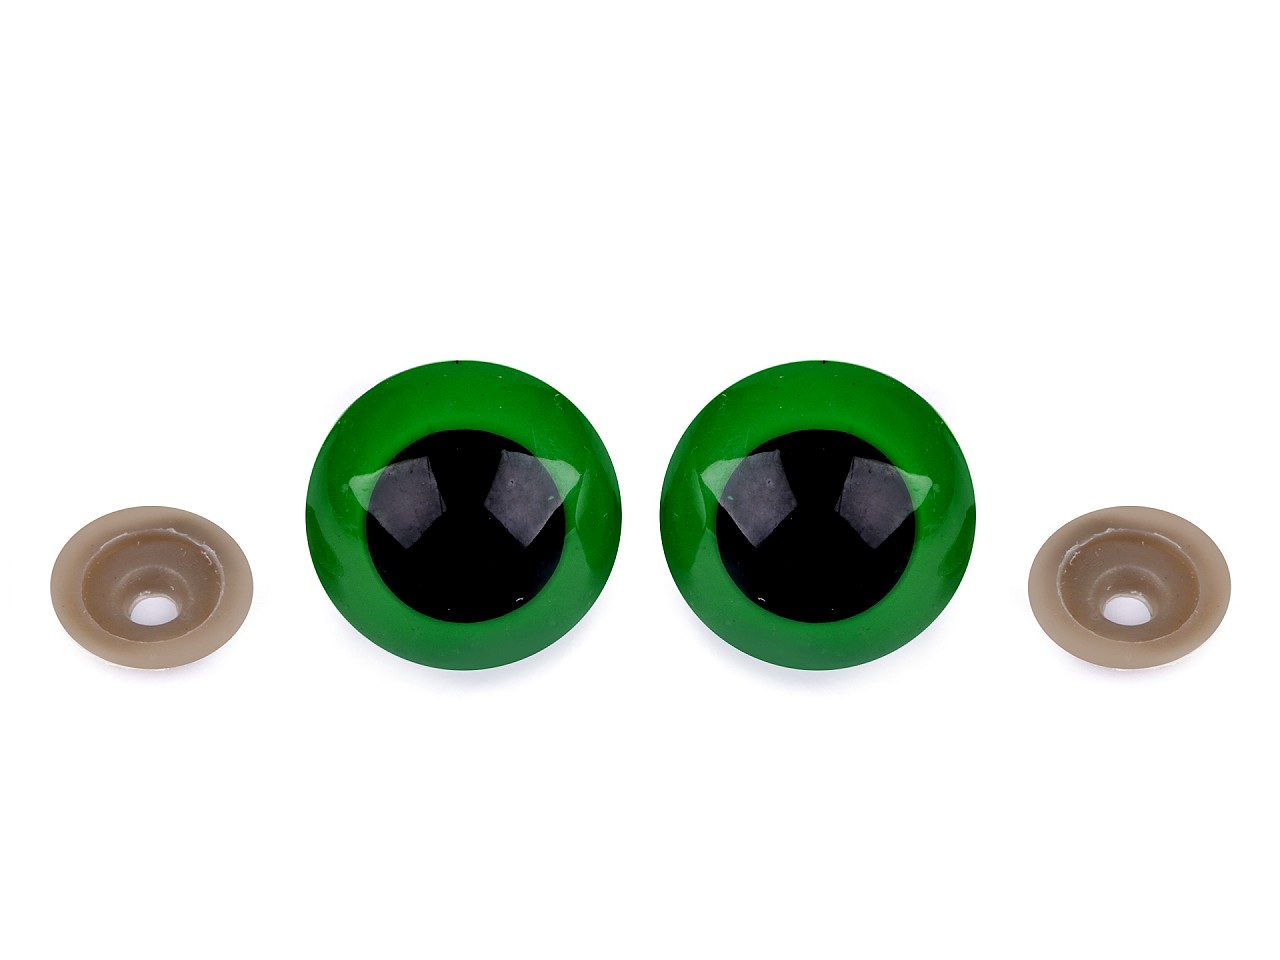 Oči velké s pojistkou Ø30 mm, barva 2 zelená